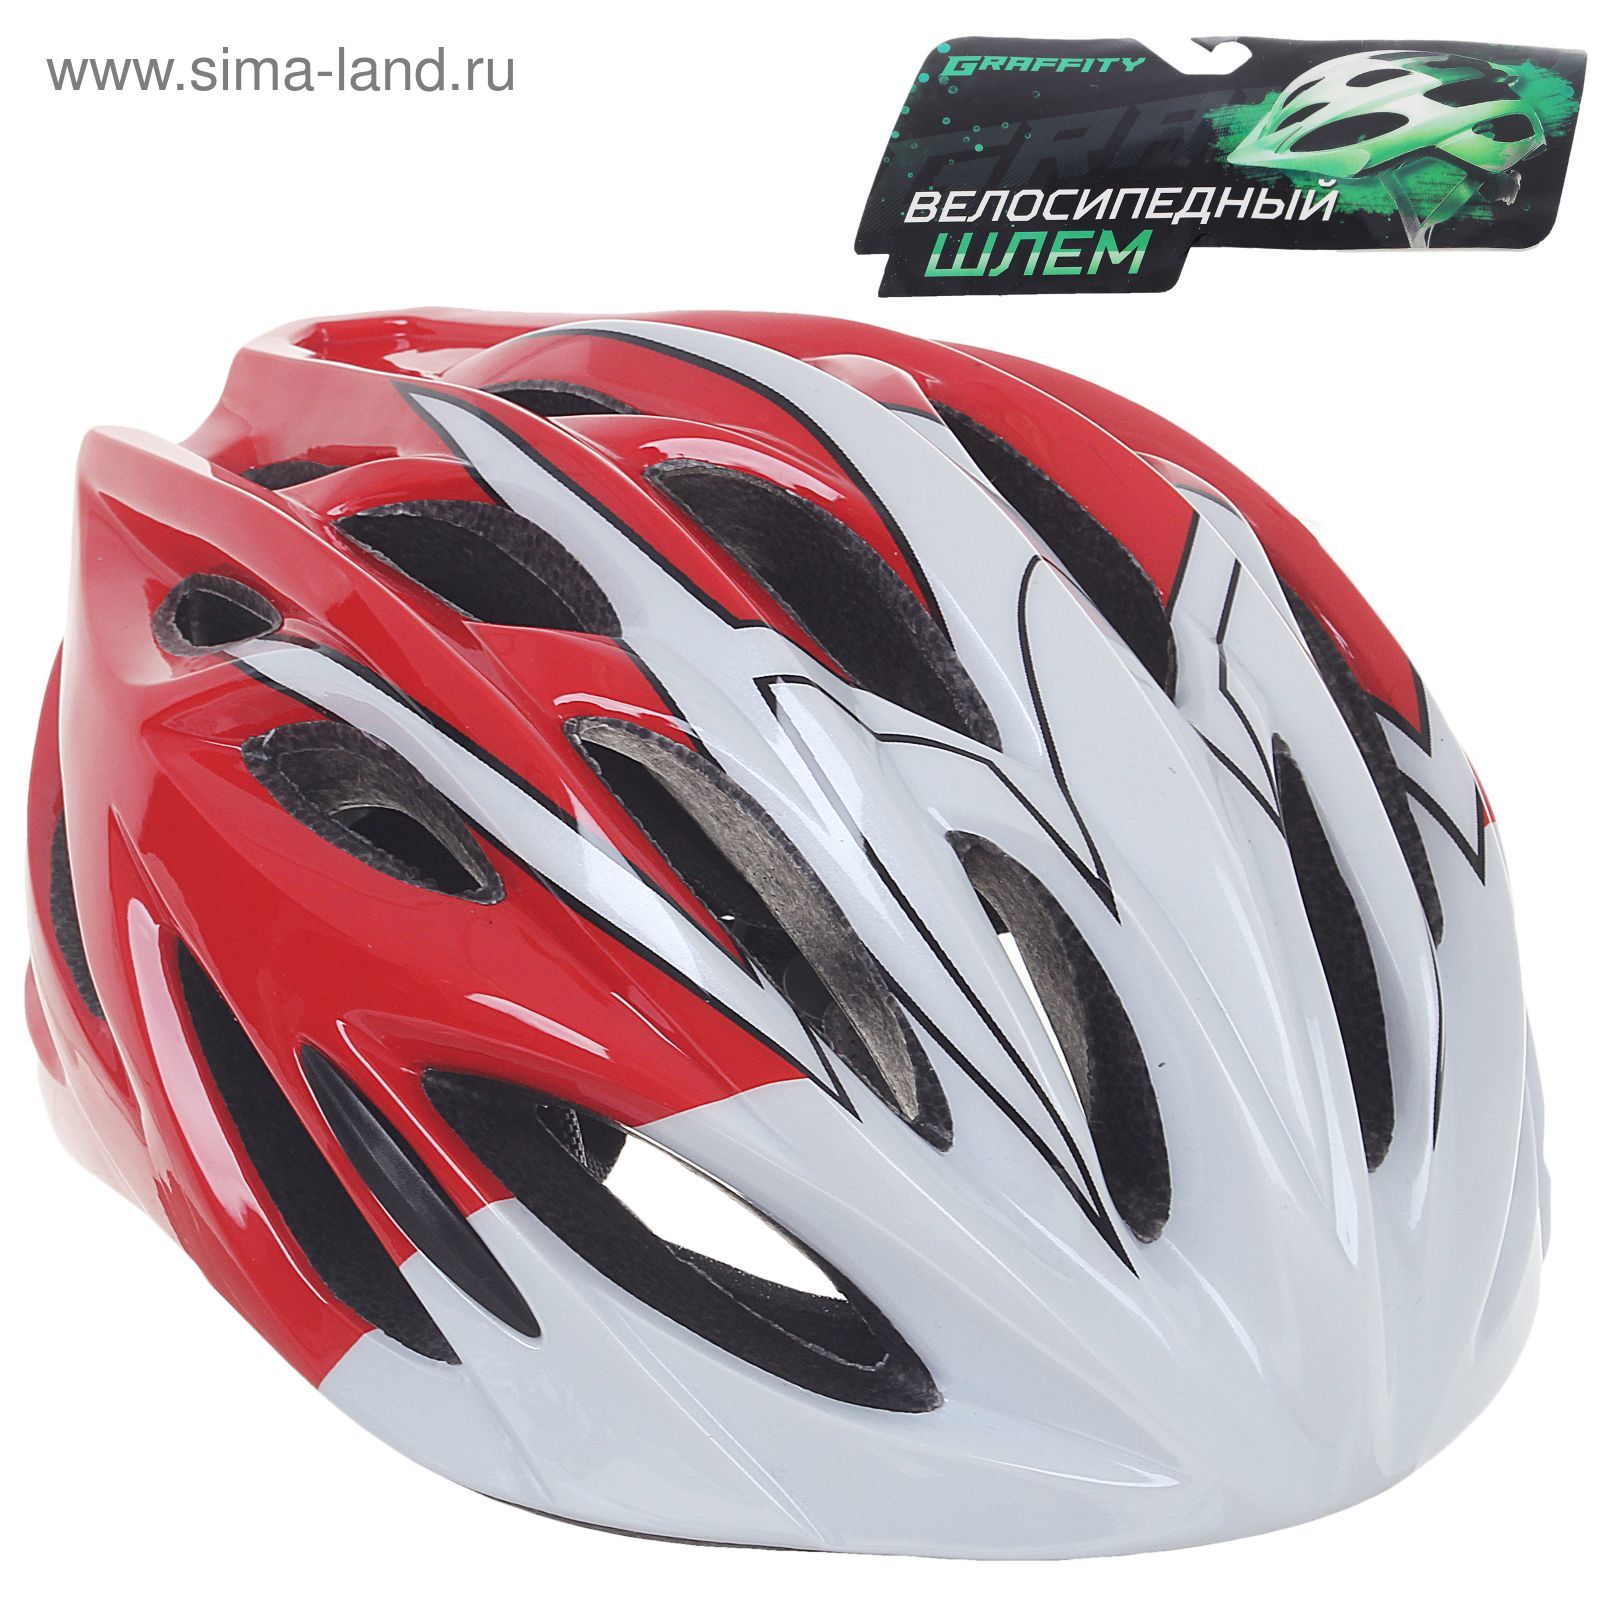 Шлем велосипедиста взрослый ОТ-328, красно-белый, диаметр 54 см